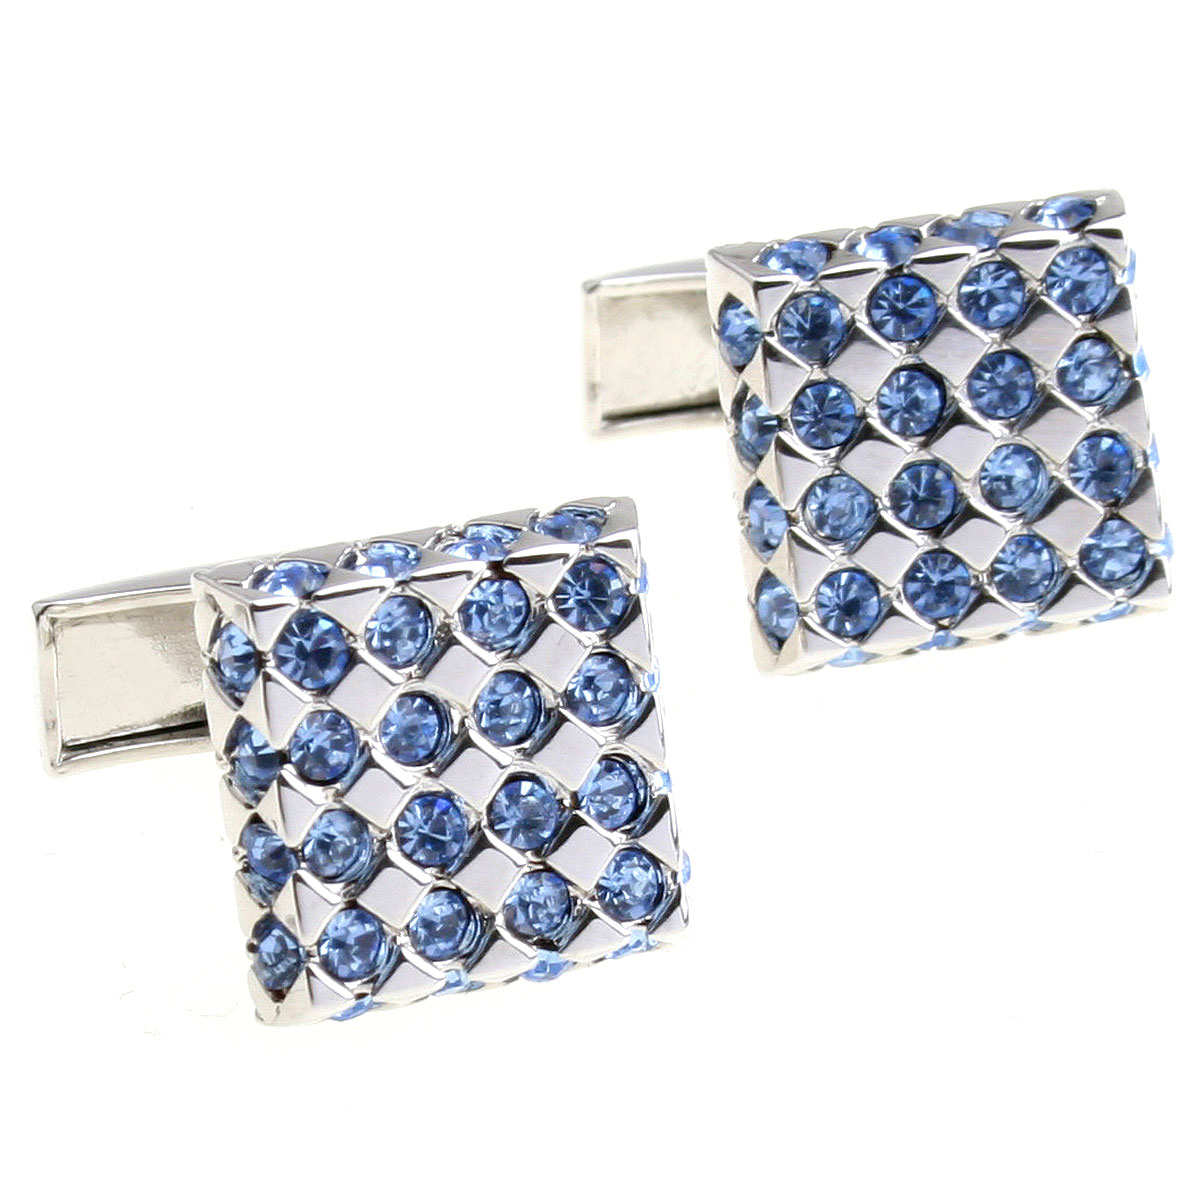 璀璨星空 蓝色水晶 银金共两色方形精致袖扣 袖钉156317